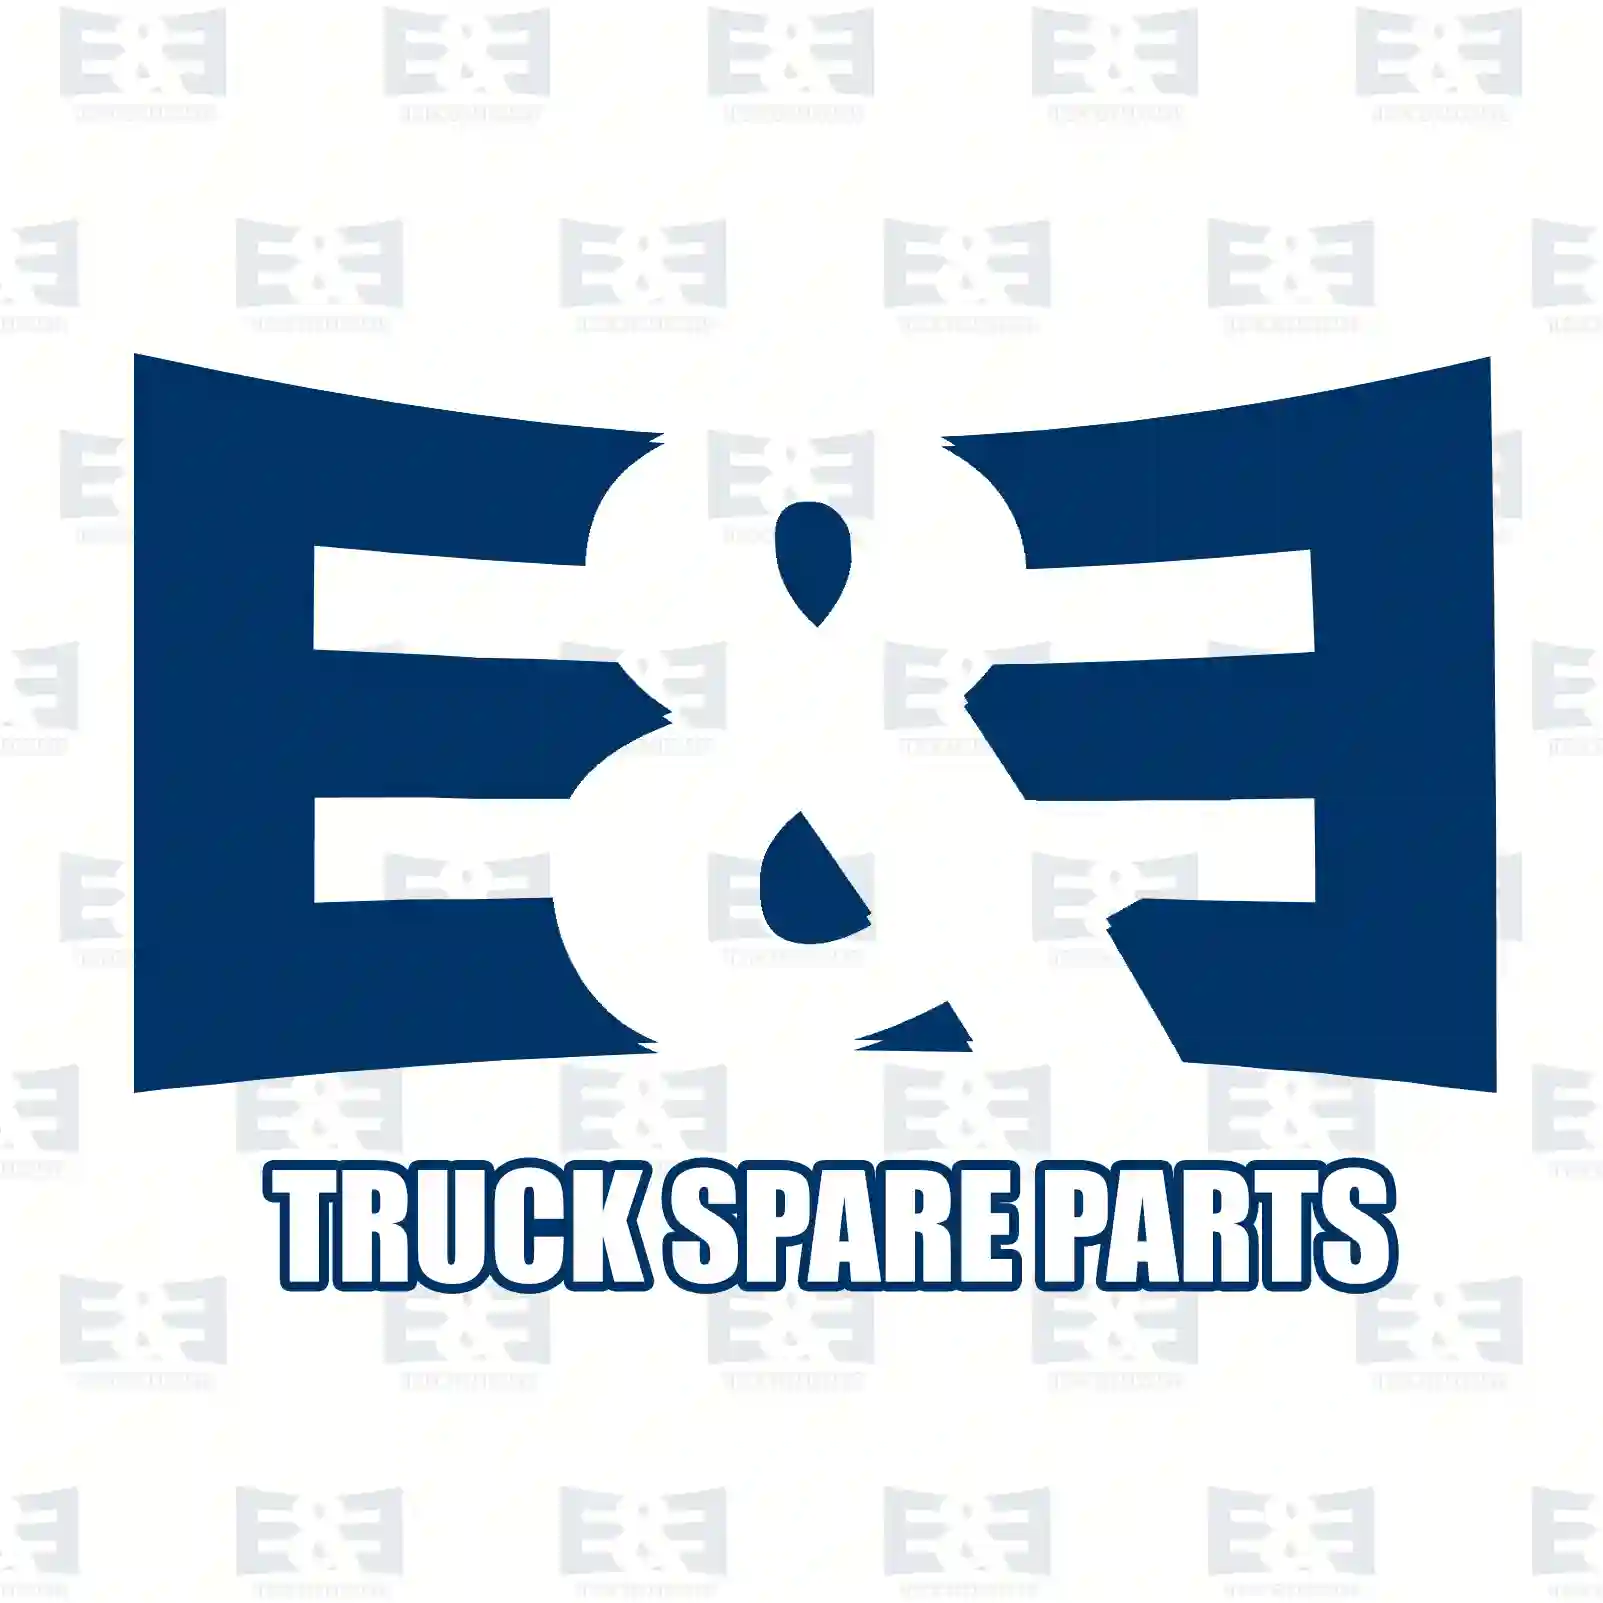 Overhaul kit, 2E2206814, 21545620, 8510985 ||  2E2206814 E&E Truck Spare Parts | Truck Spare Parts, Auotomotive Spare Parts Overhaul kit, 2E2206814, 21545620, 8510985 ||  2E2206814 E&E Truck Spare Parts | Truck Spare Parts, Auotomotive Spare Parts